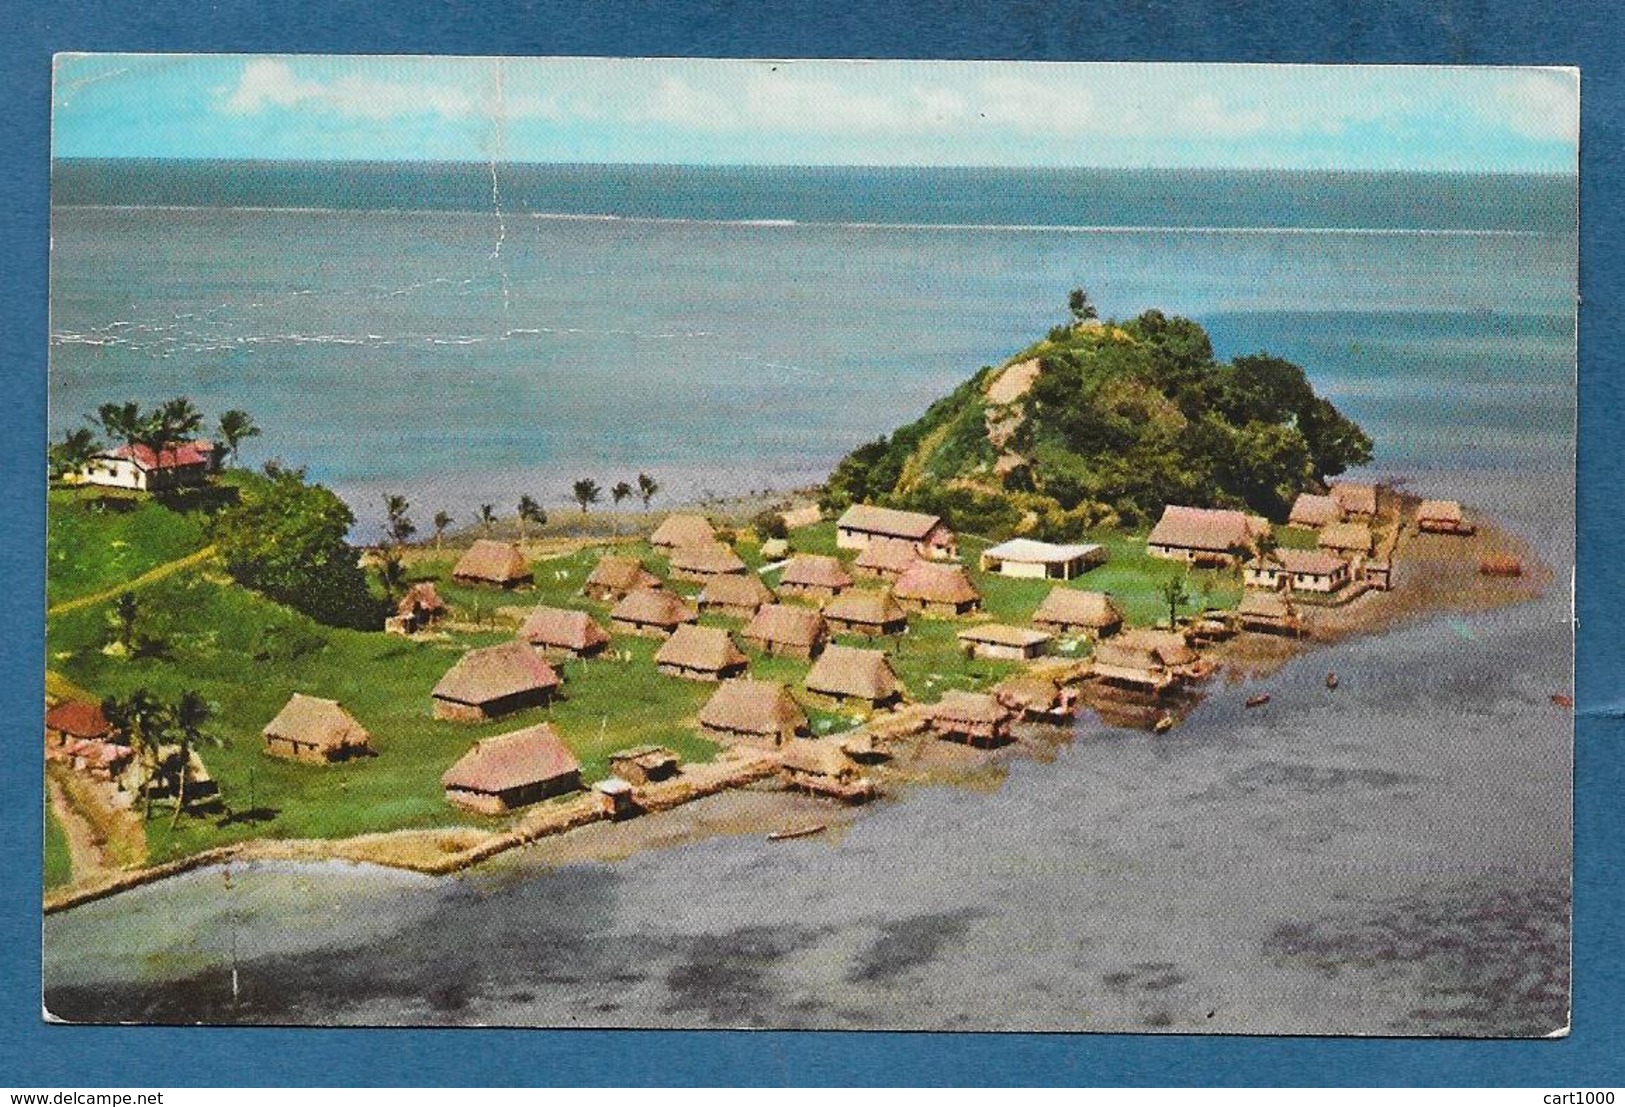 FIJI SERUA ISLAND 1967 - Figi